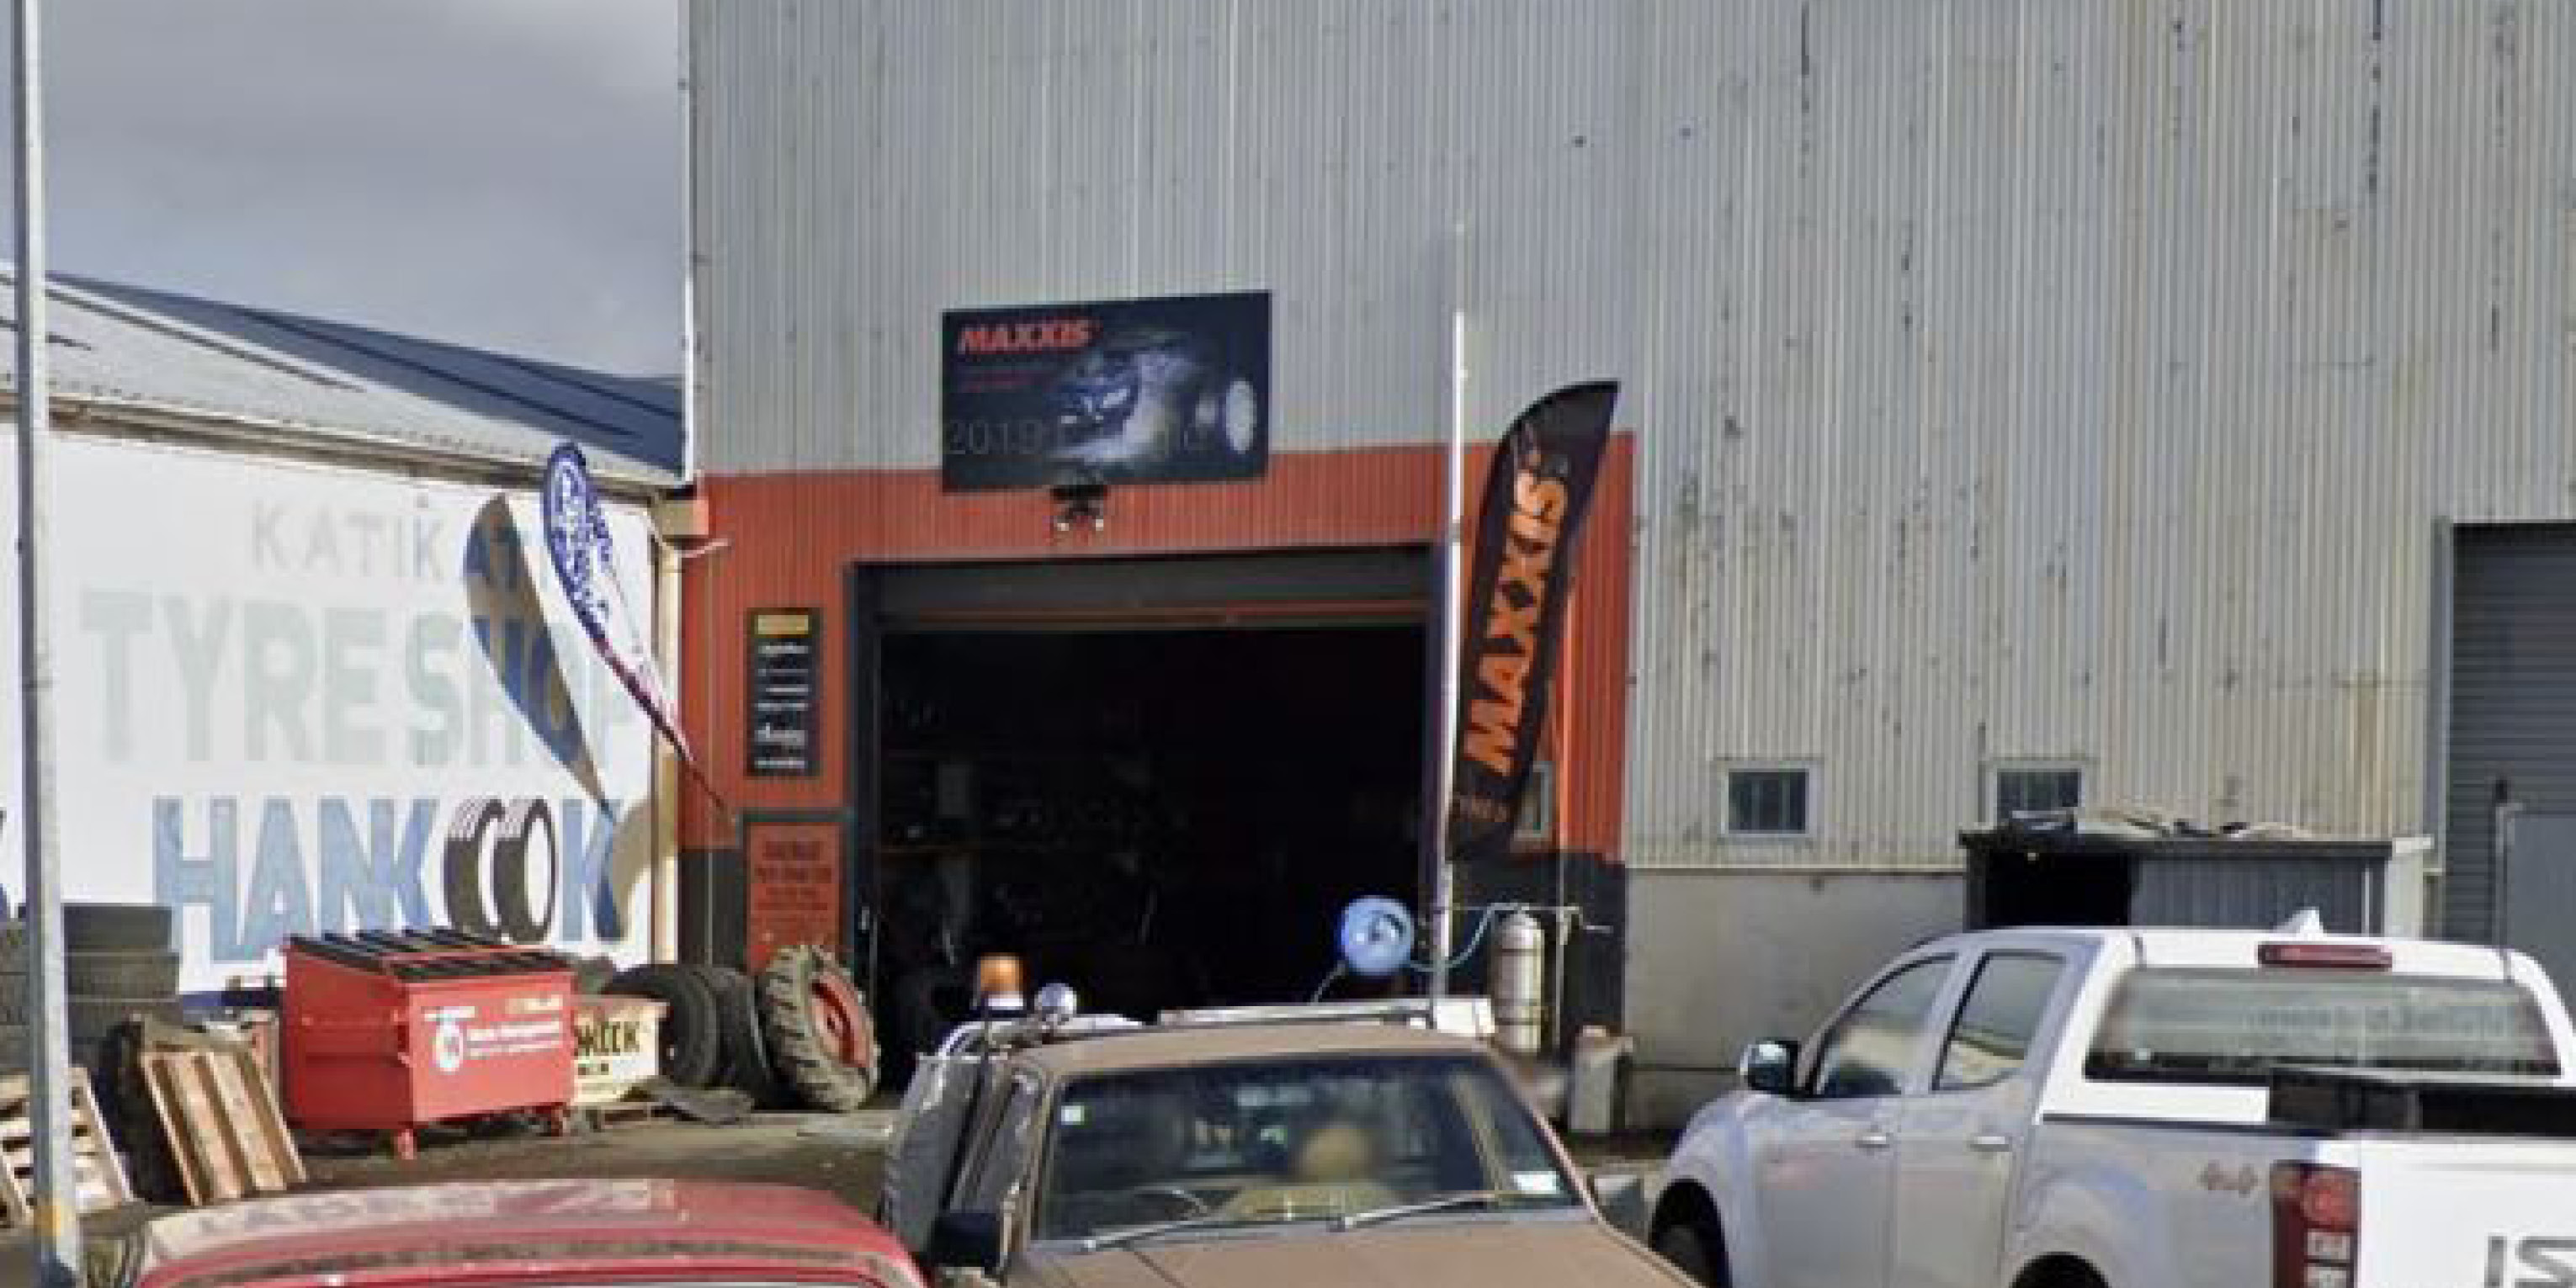 Katikati Tyre Shop